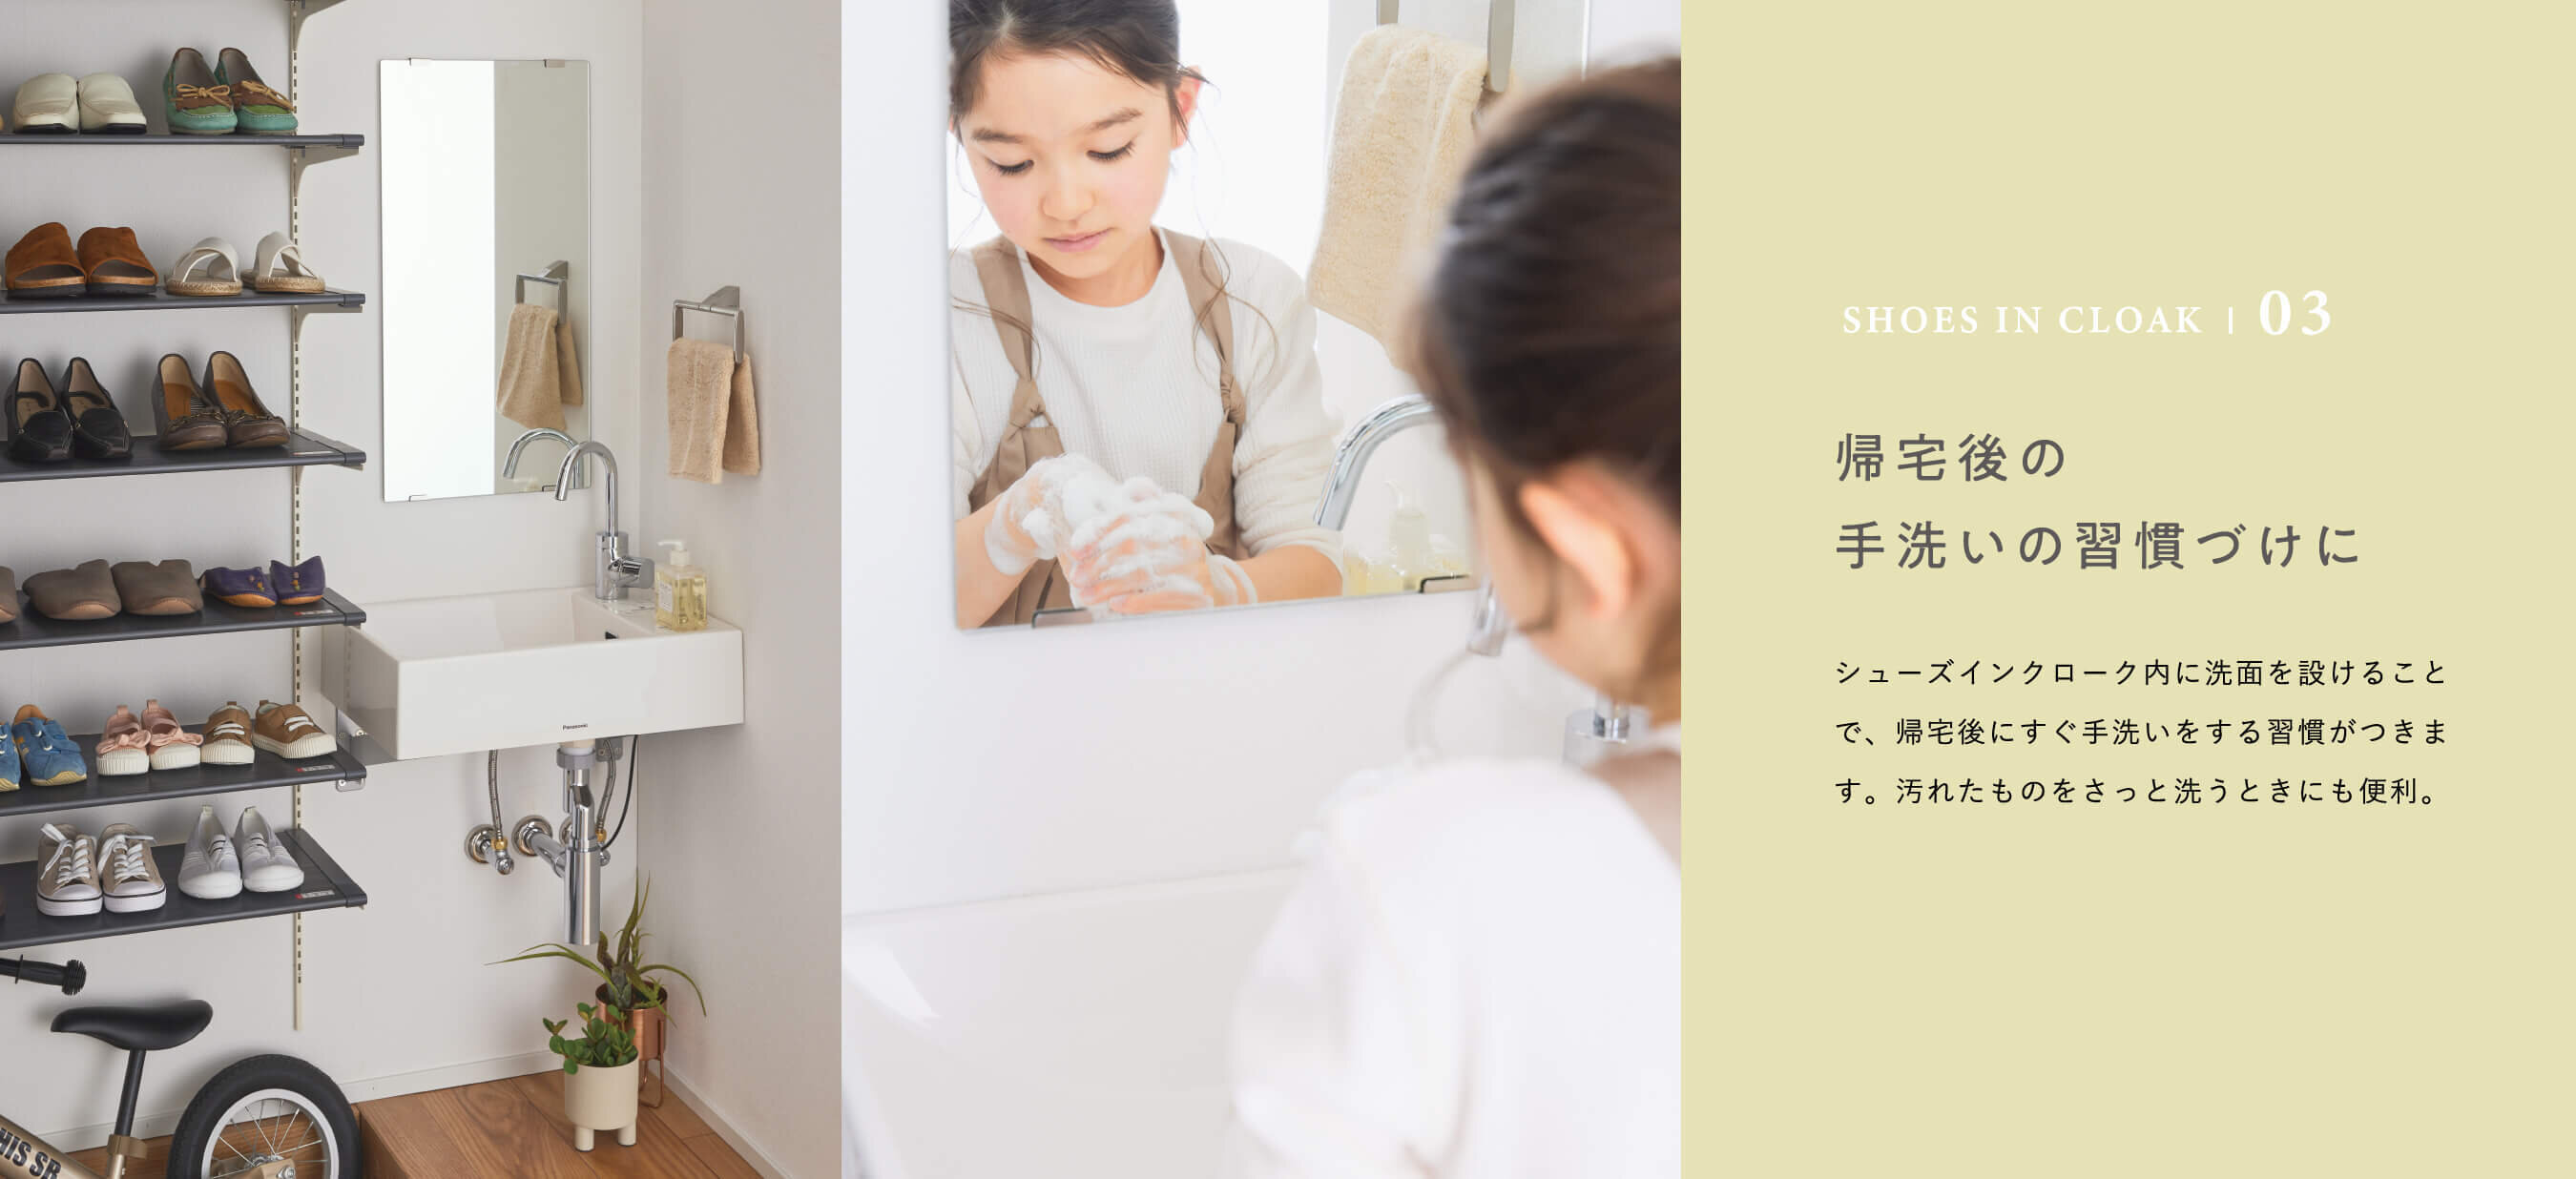 SHOES IN CLOAK | 03 帰宅後の手洗いの習慣づけに　シューズインクローク内に洗面を設けることで、帰宅後にすぐ手洗いをする習慣がつきます。汚れたものをさっと洗うときにも便利。